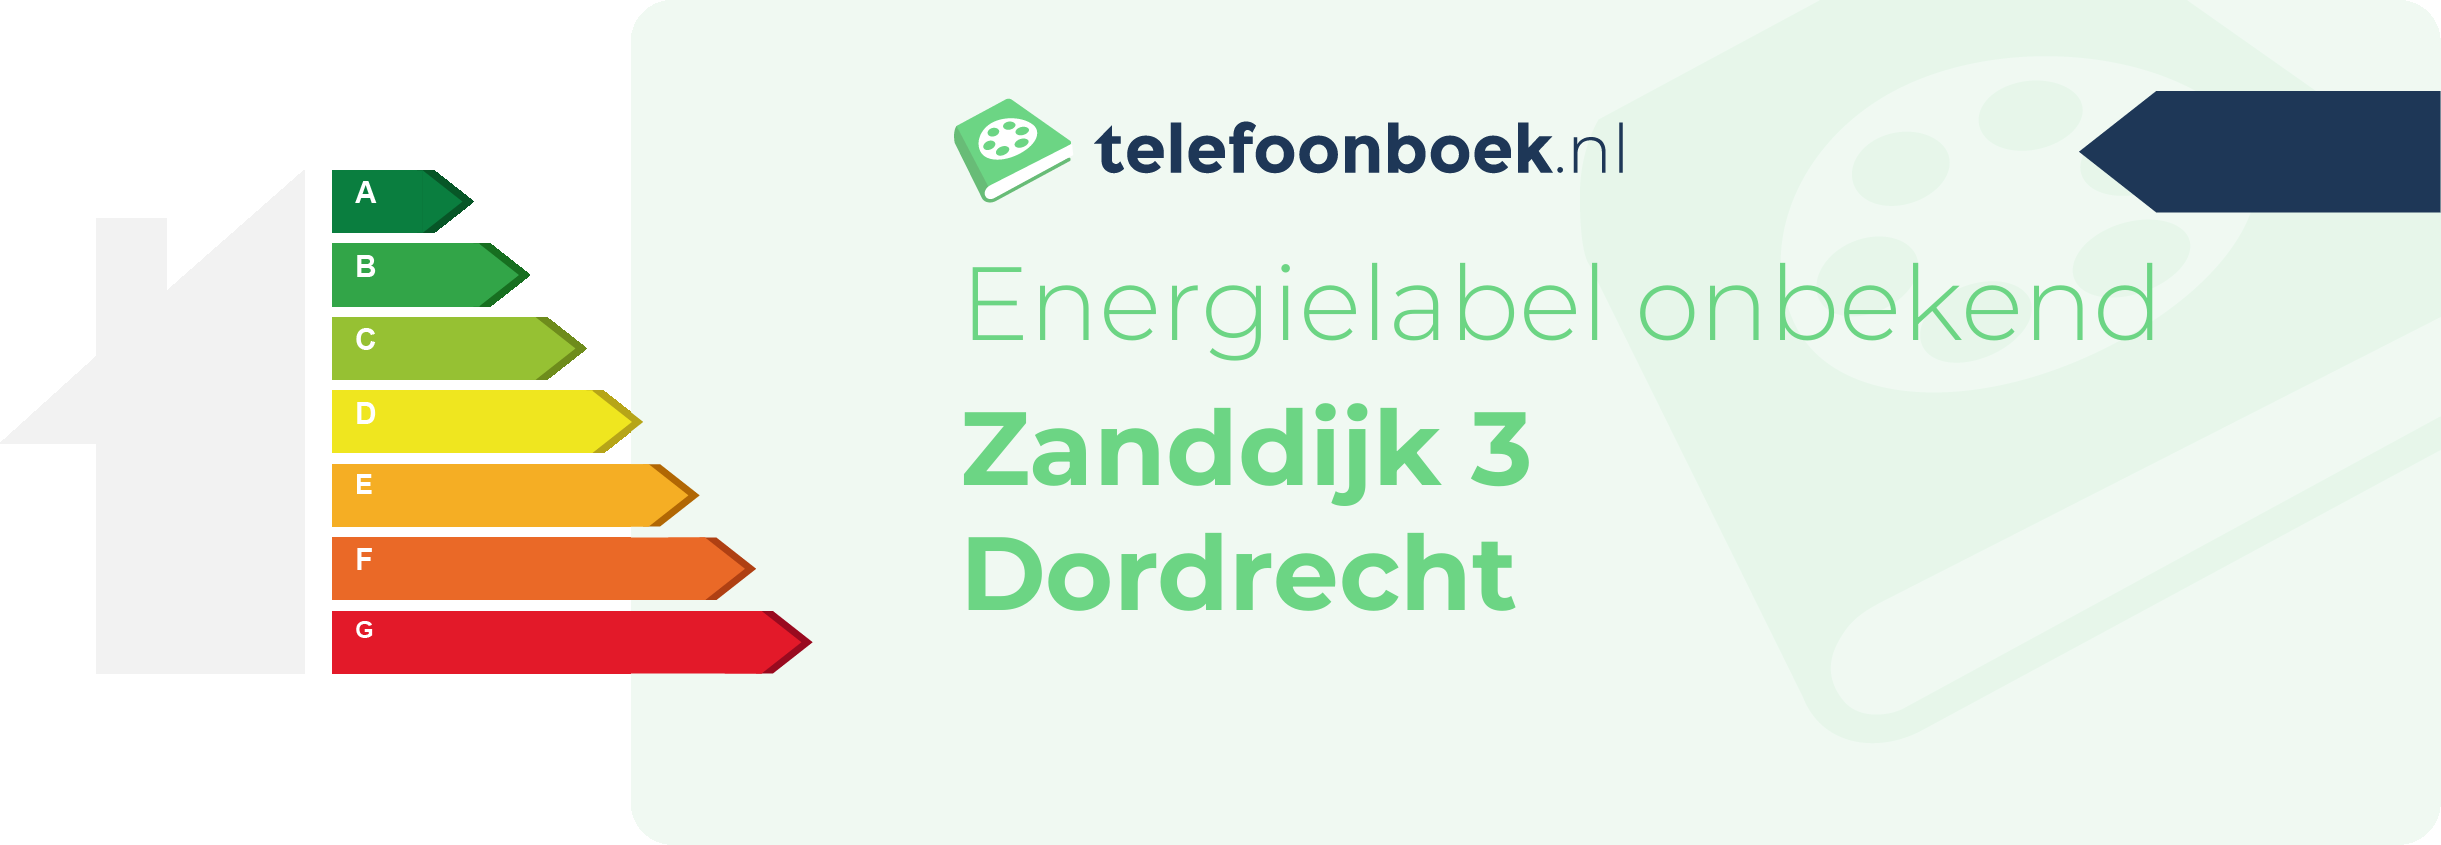 Energielabel Zanddijk 3 Dordrecht